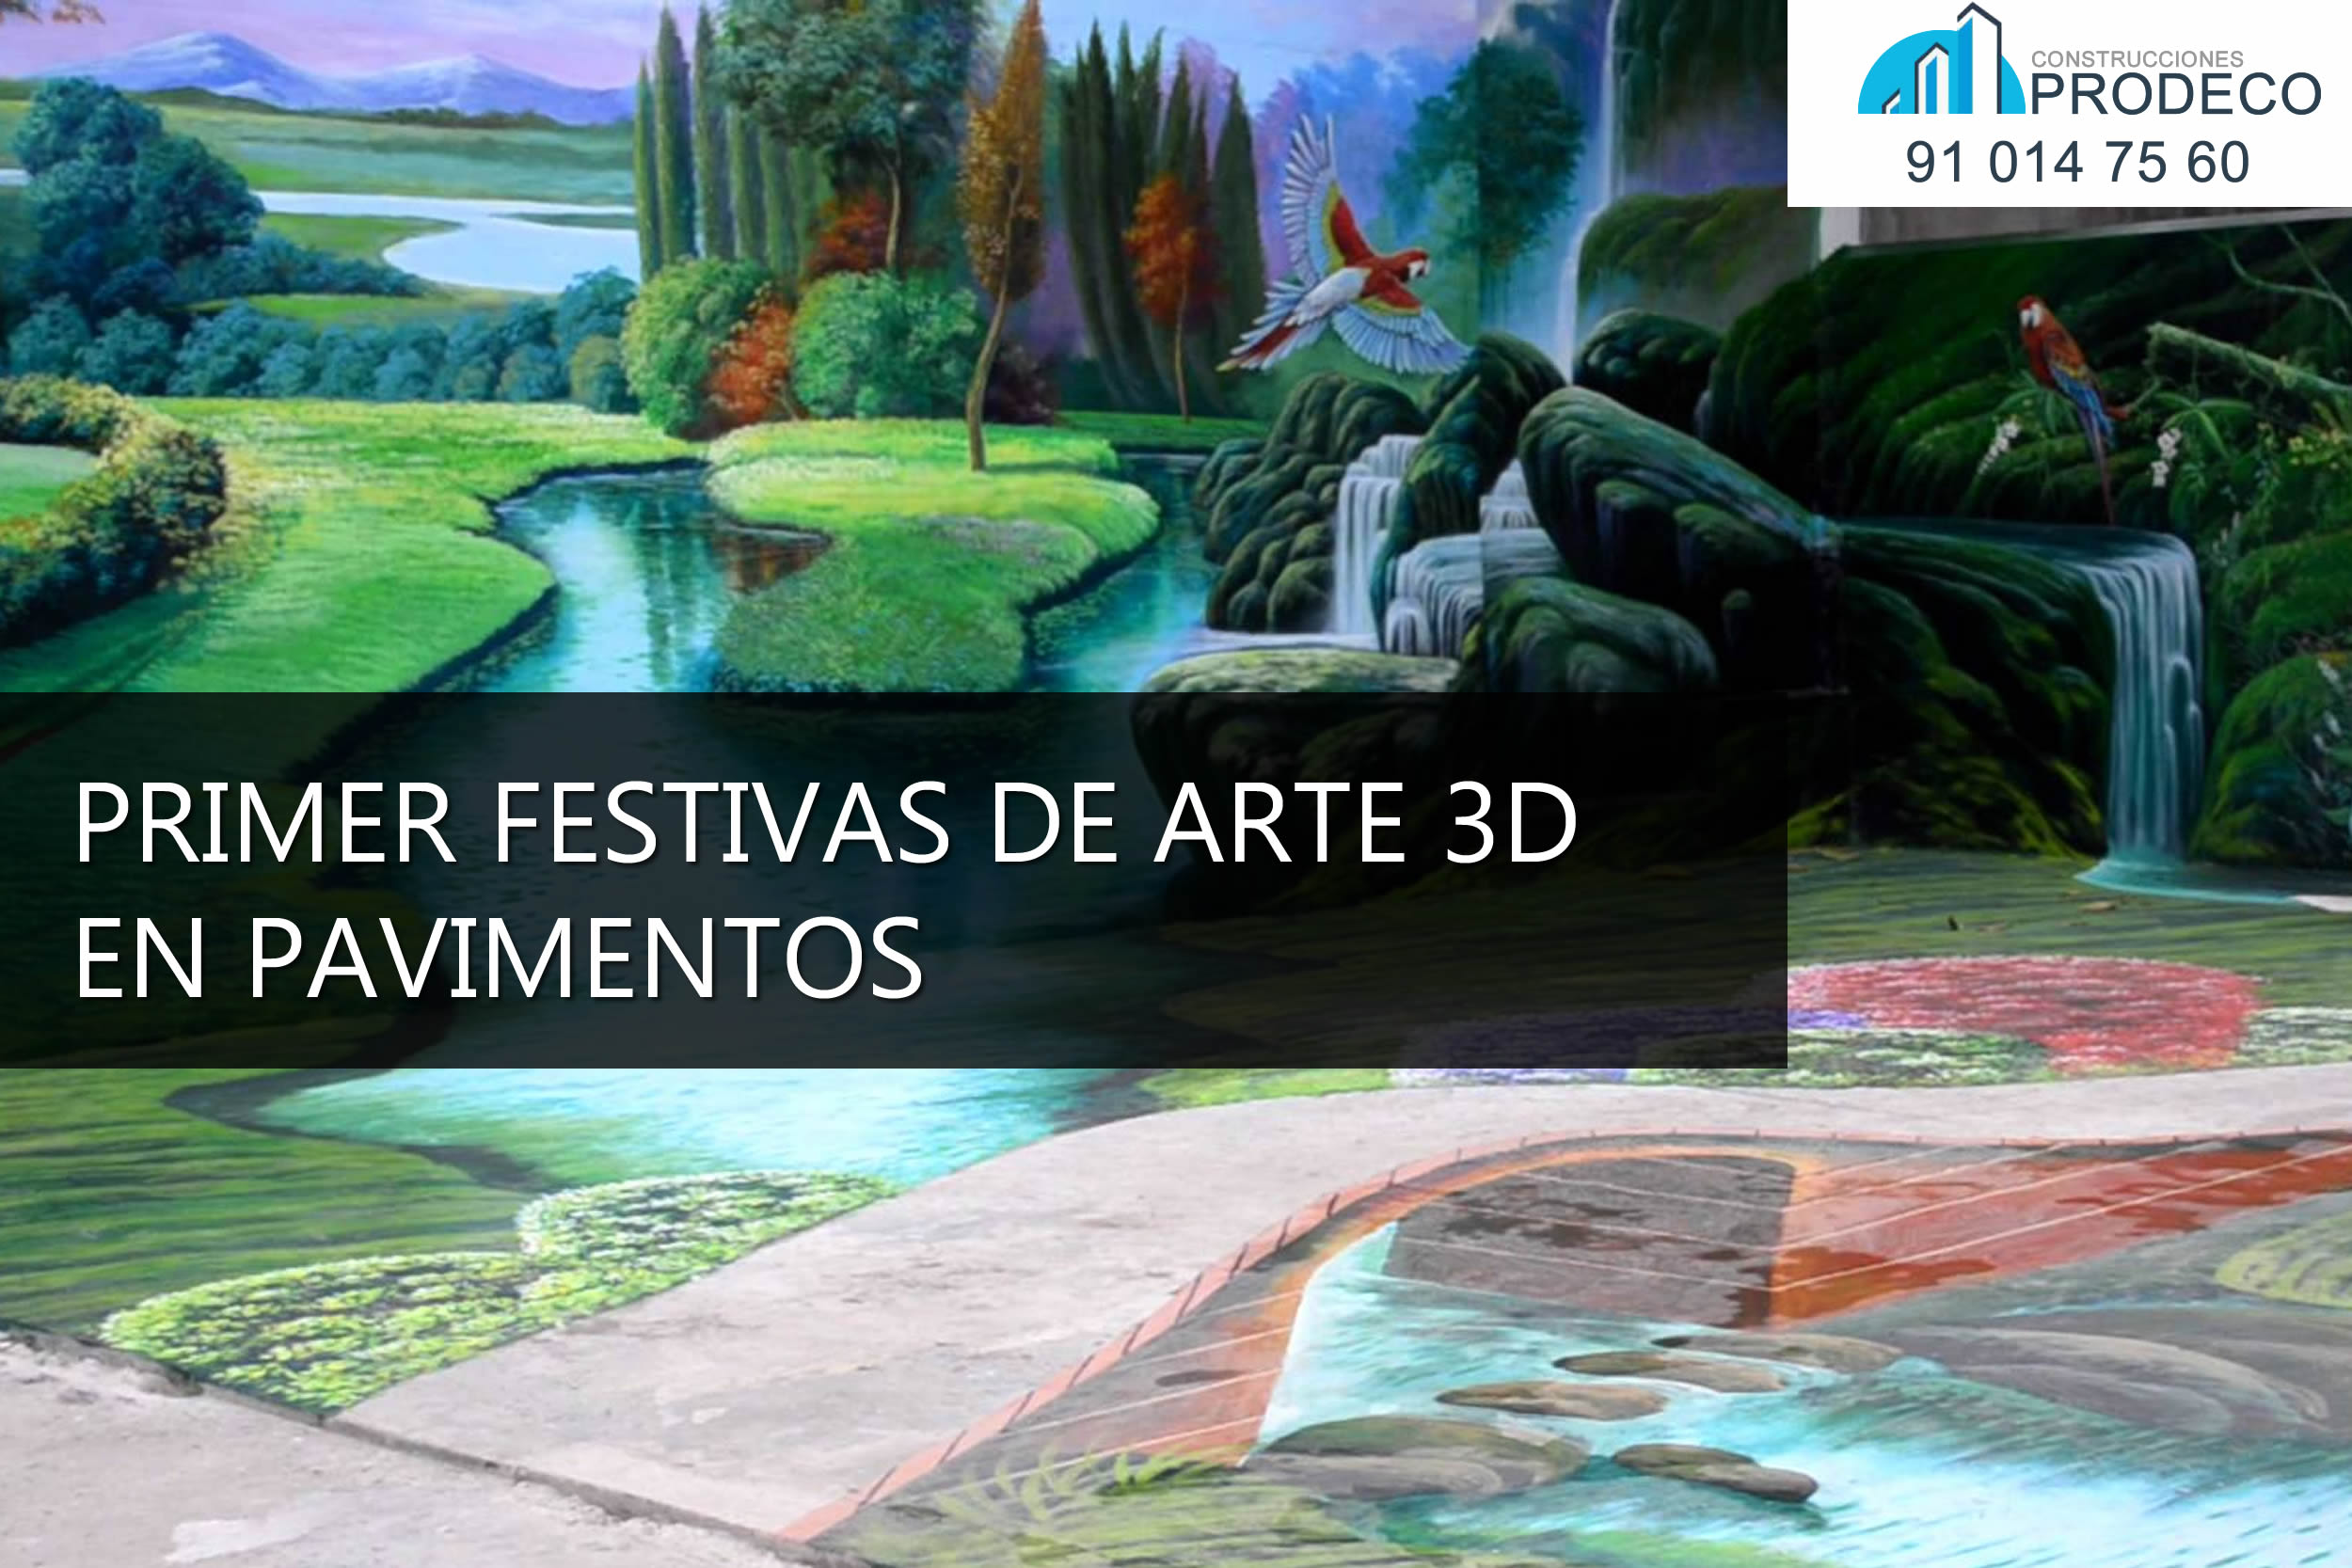 Primer Festival de Arte 3D en Pavimentos